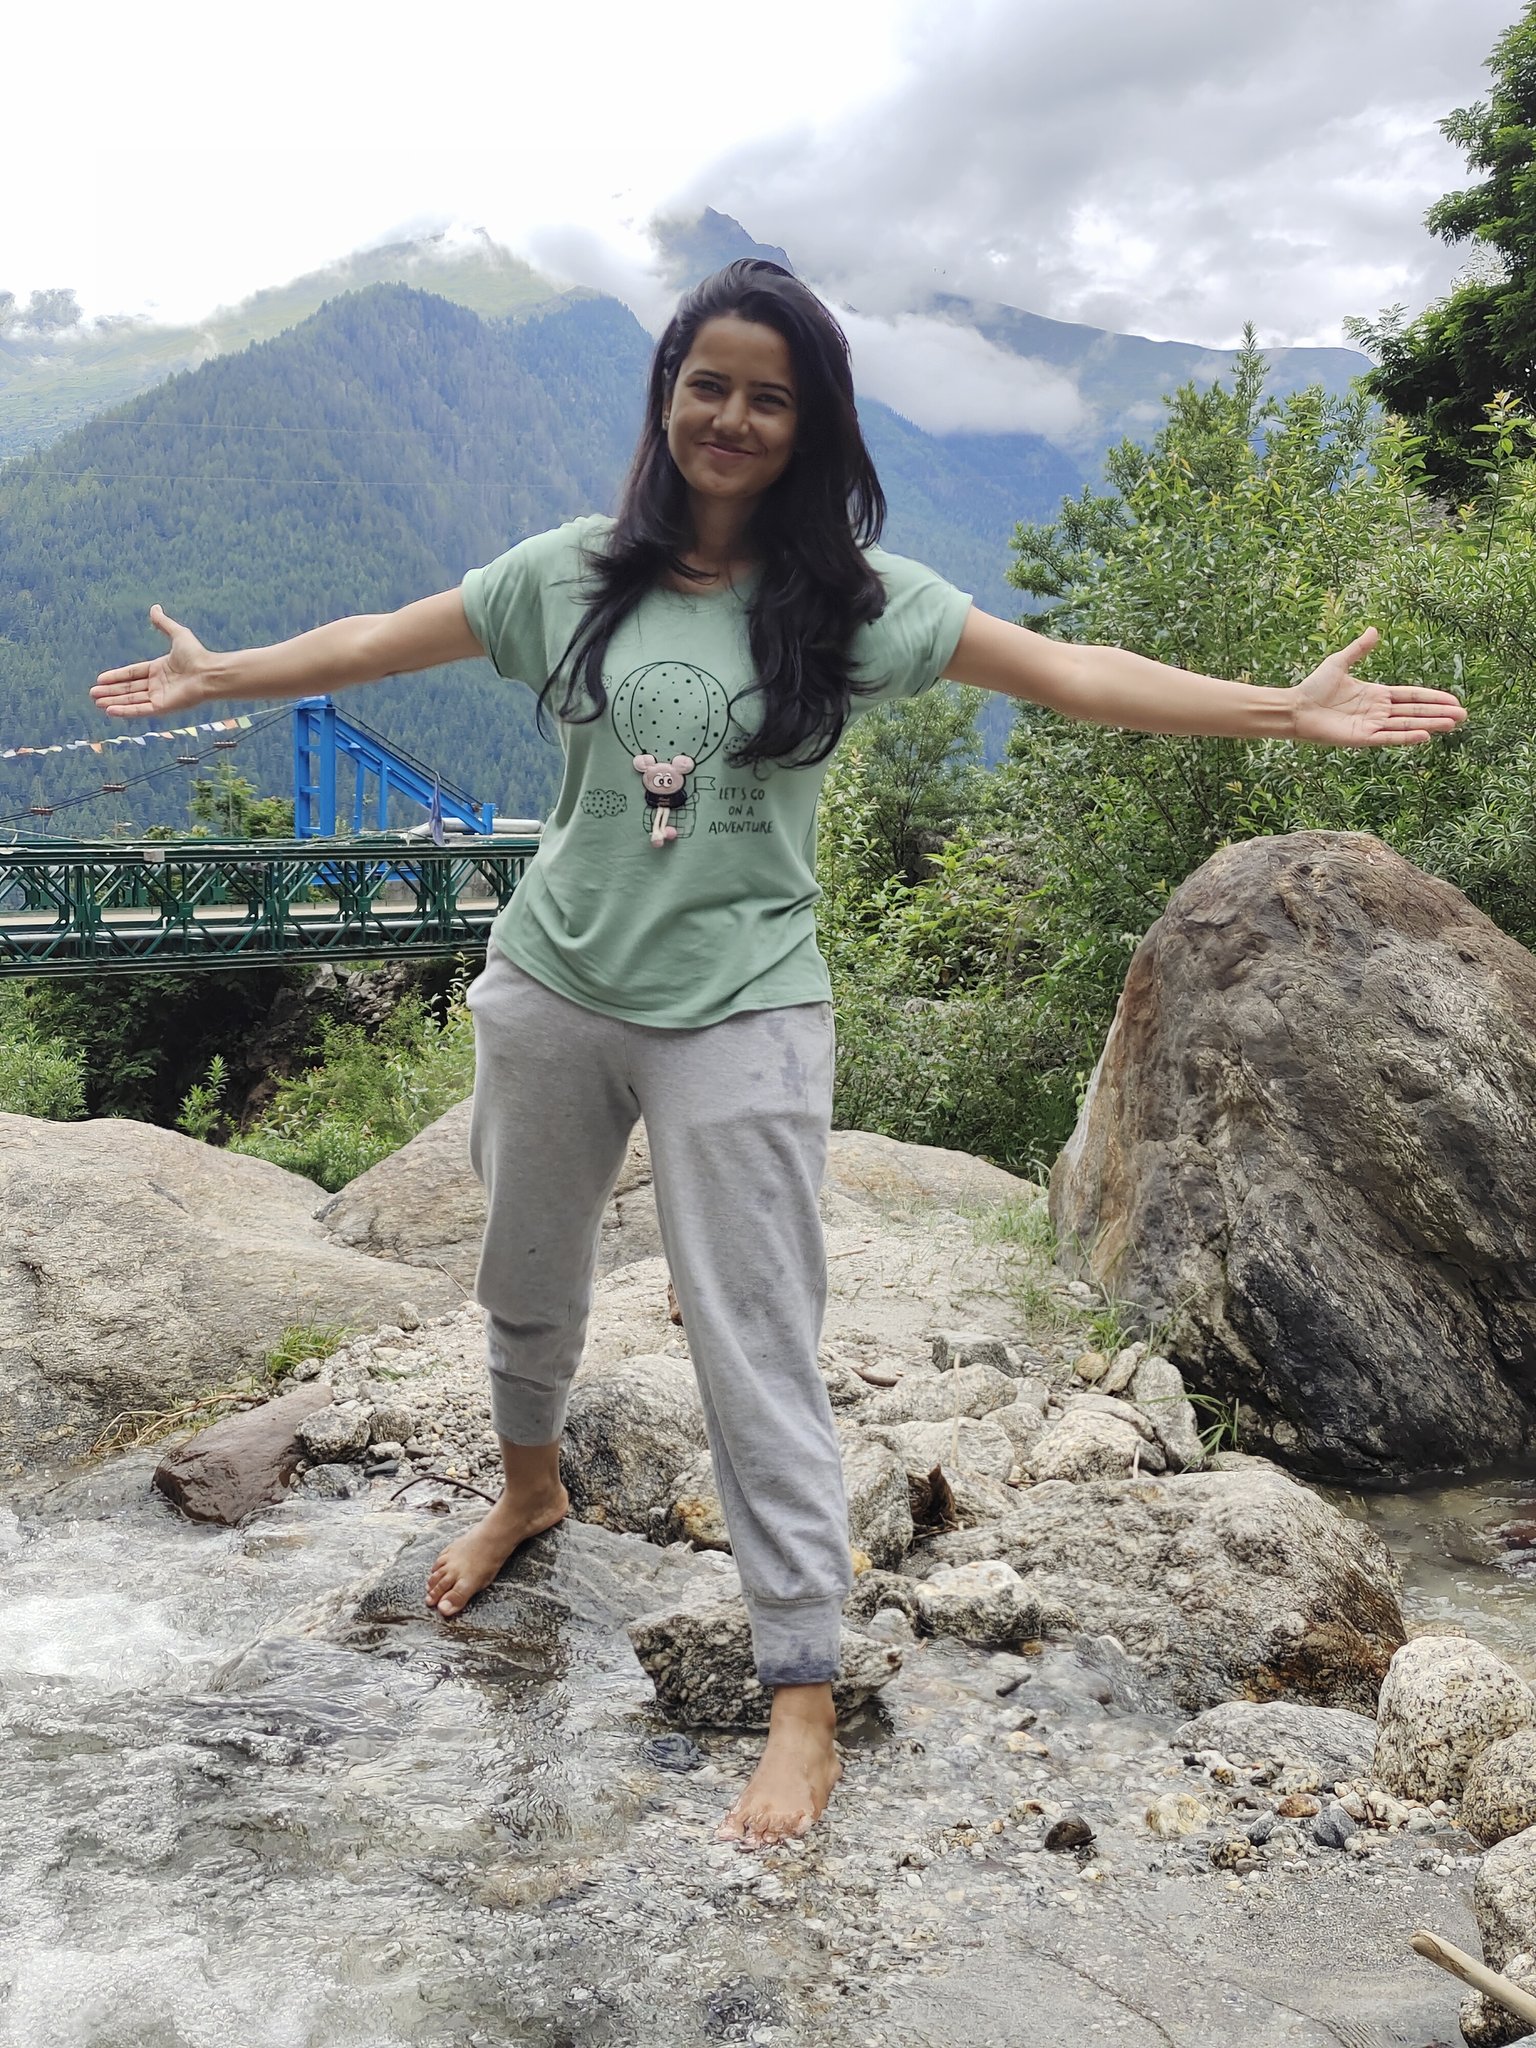 before-she-died-in-kinnaur-landslide-jaipur-based-doctor-tweeted-this-photo